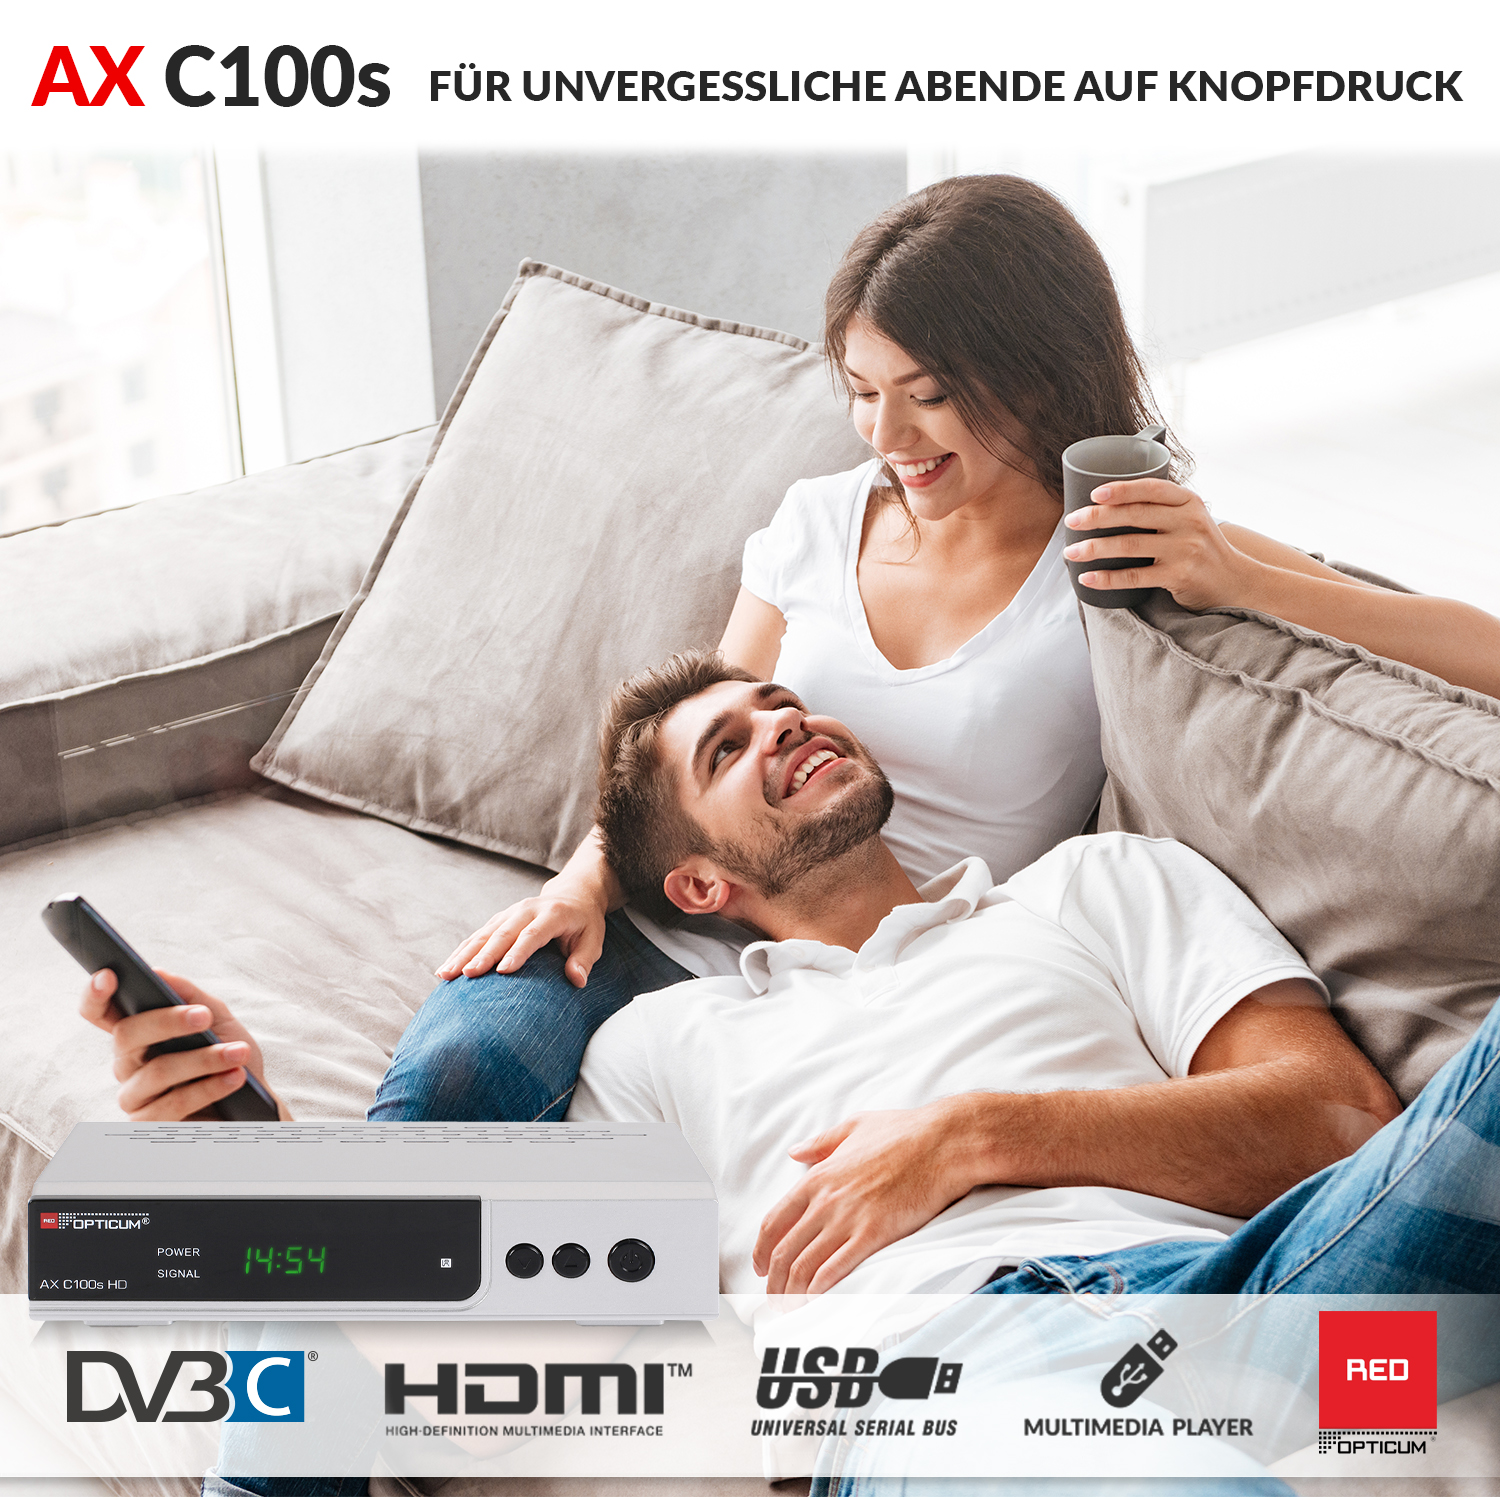 PVR-Aufnahmefunktion RED HD-EPG-HDMI-USB-SCART mit Kabelreceiver C100s OPTICUM PVR-Funktion, Kabel-Receiver HD DVB-C, Receiver (HDTV, silber) I DVB-C2, Digitaler AX DVB-C